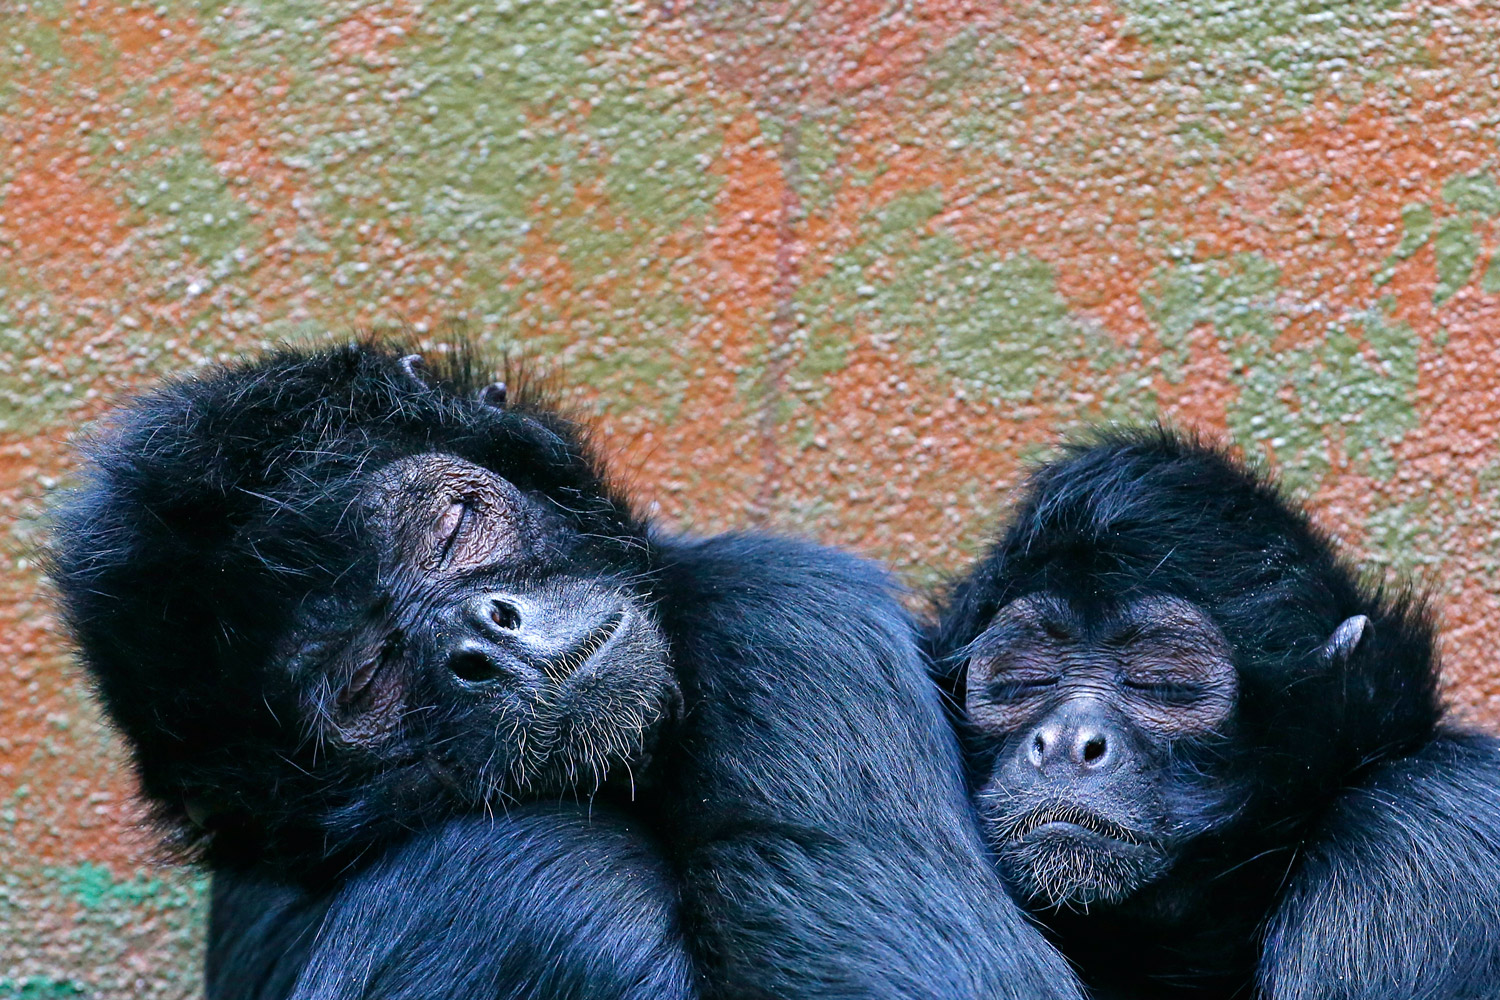 El estatus social cambia el cerebro de los primates.